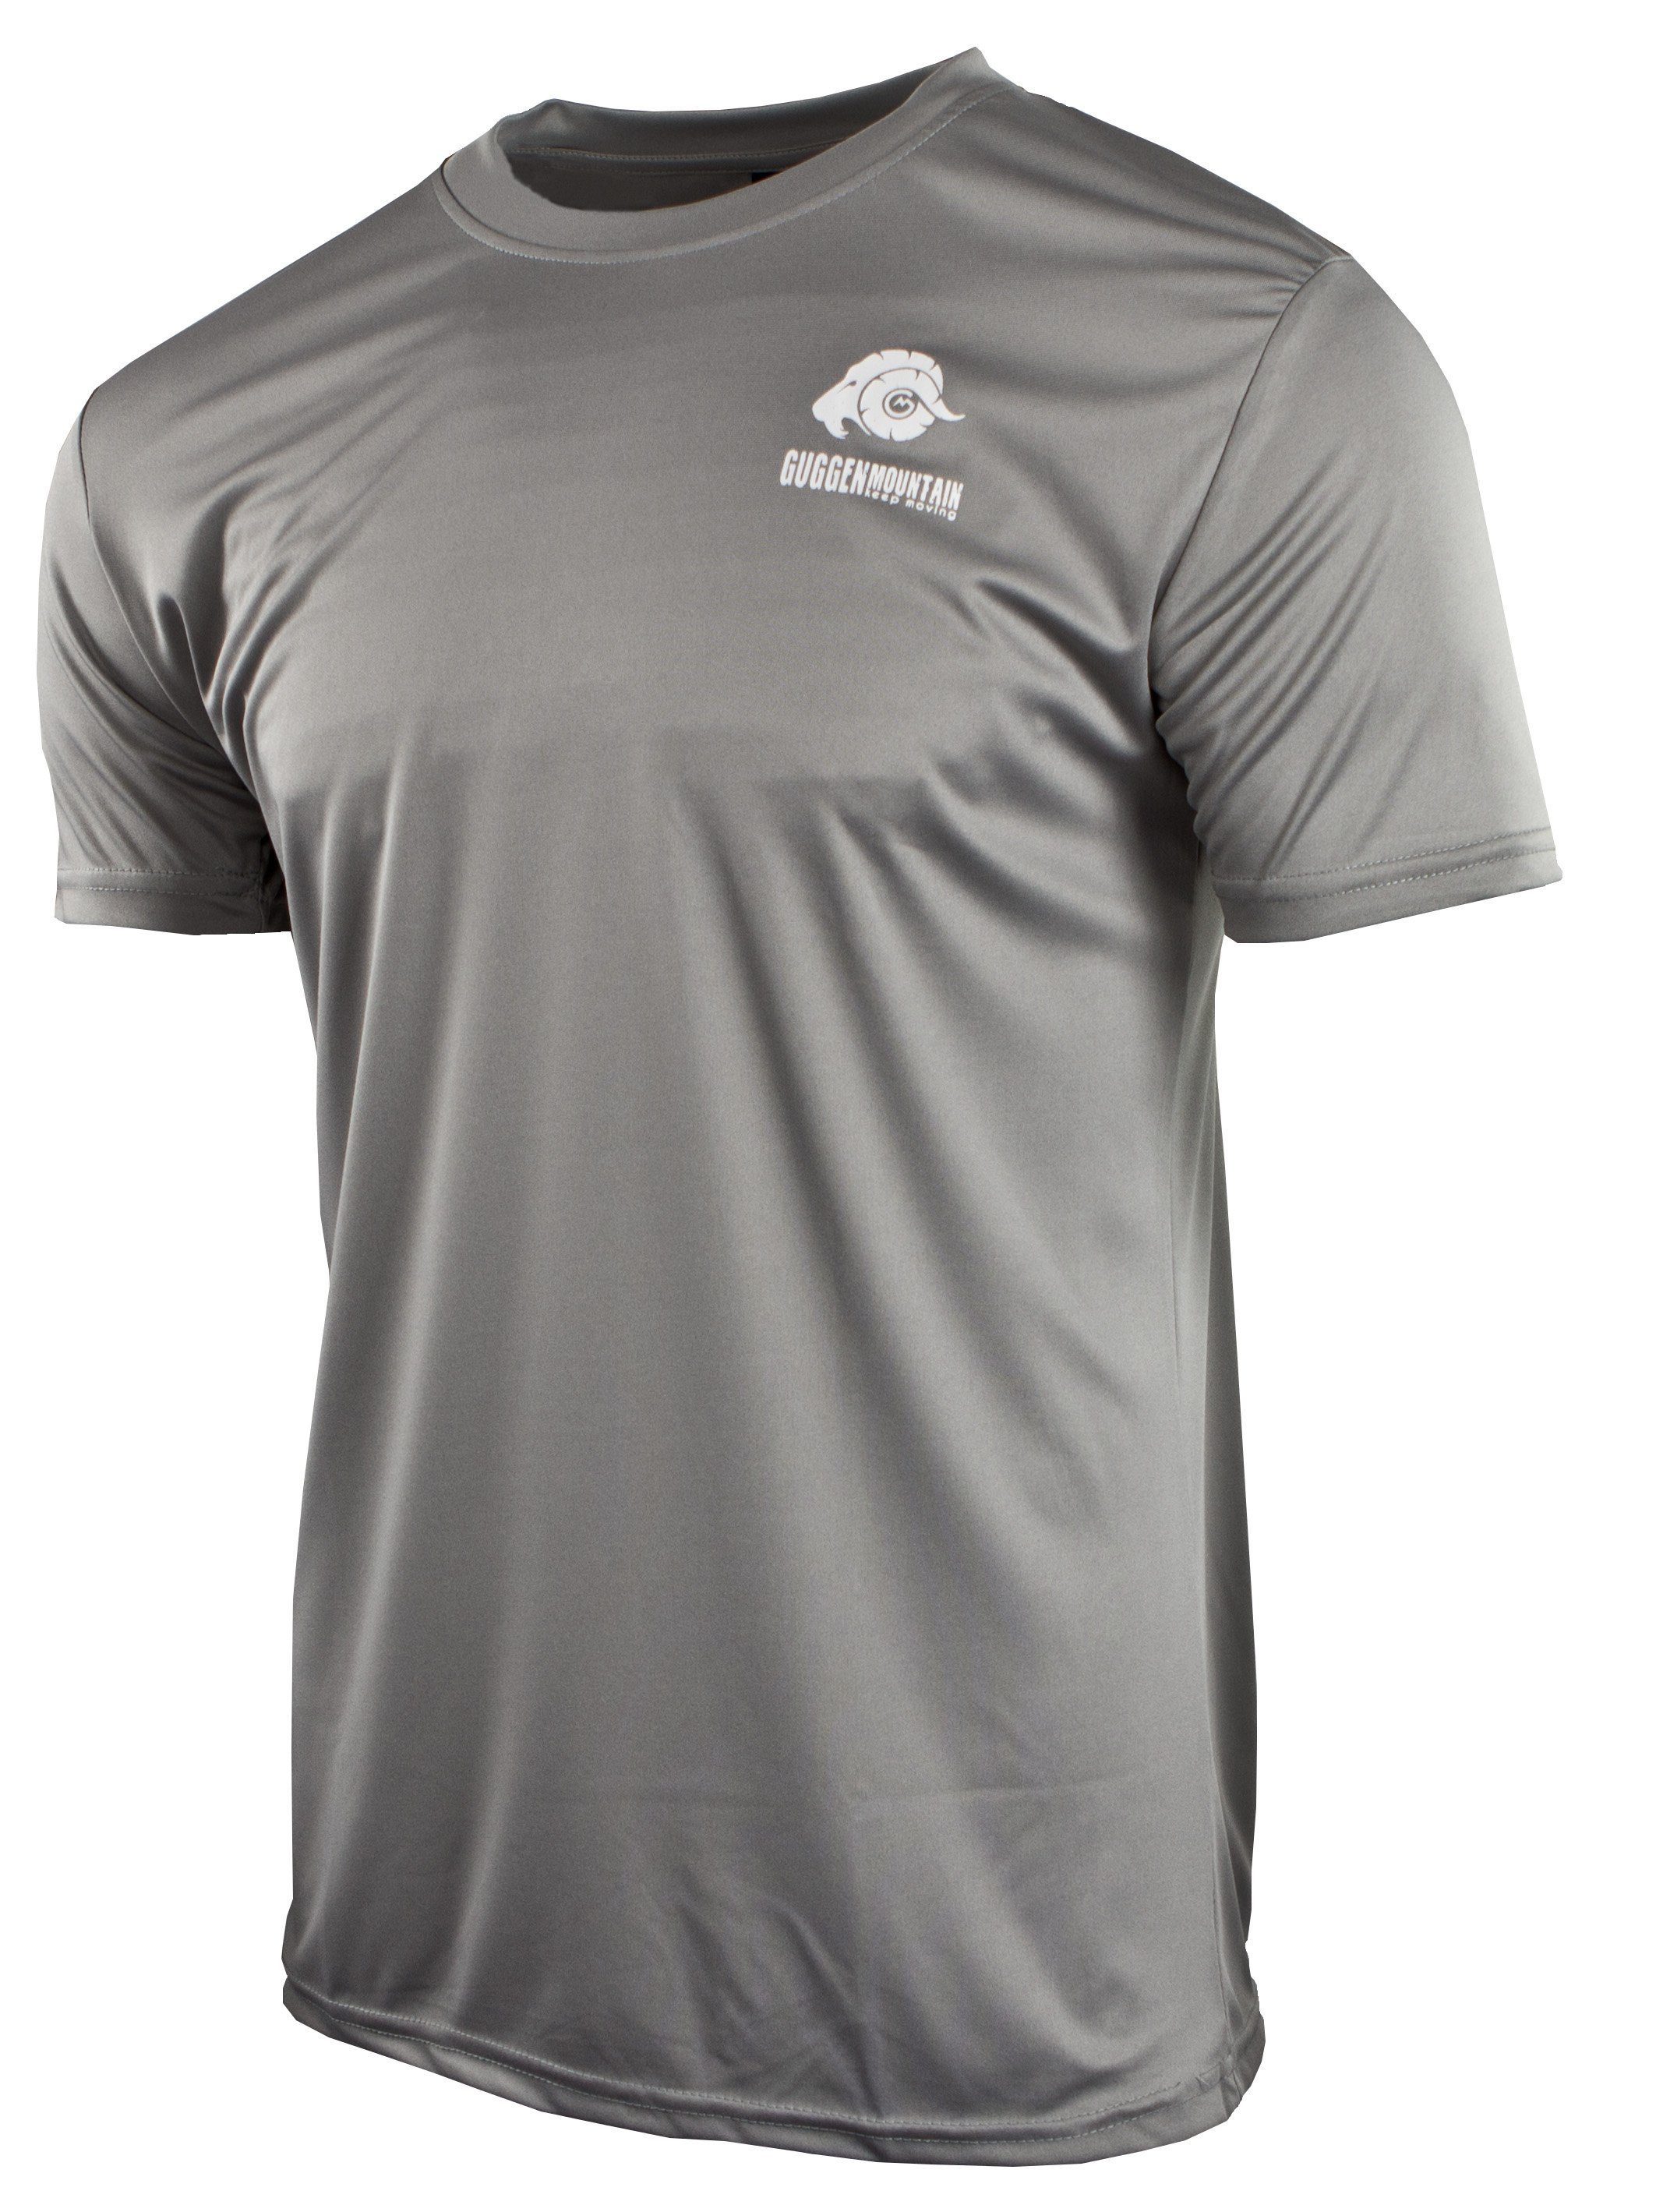 FW04 Unifarben, Mountain Sportshirt Funktionsshirt in Dunkelgrau-MIT-Logo Logo Kurzarm T-Shirt Herren GUGGEN Funktionsshirt